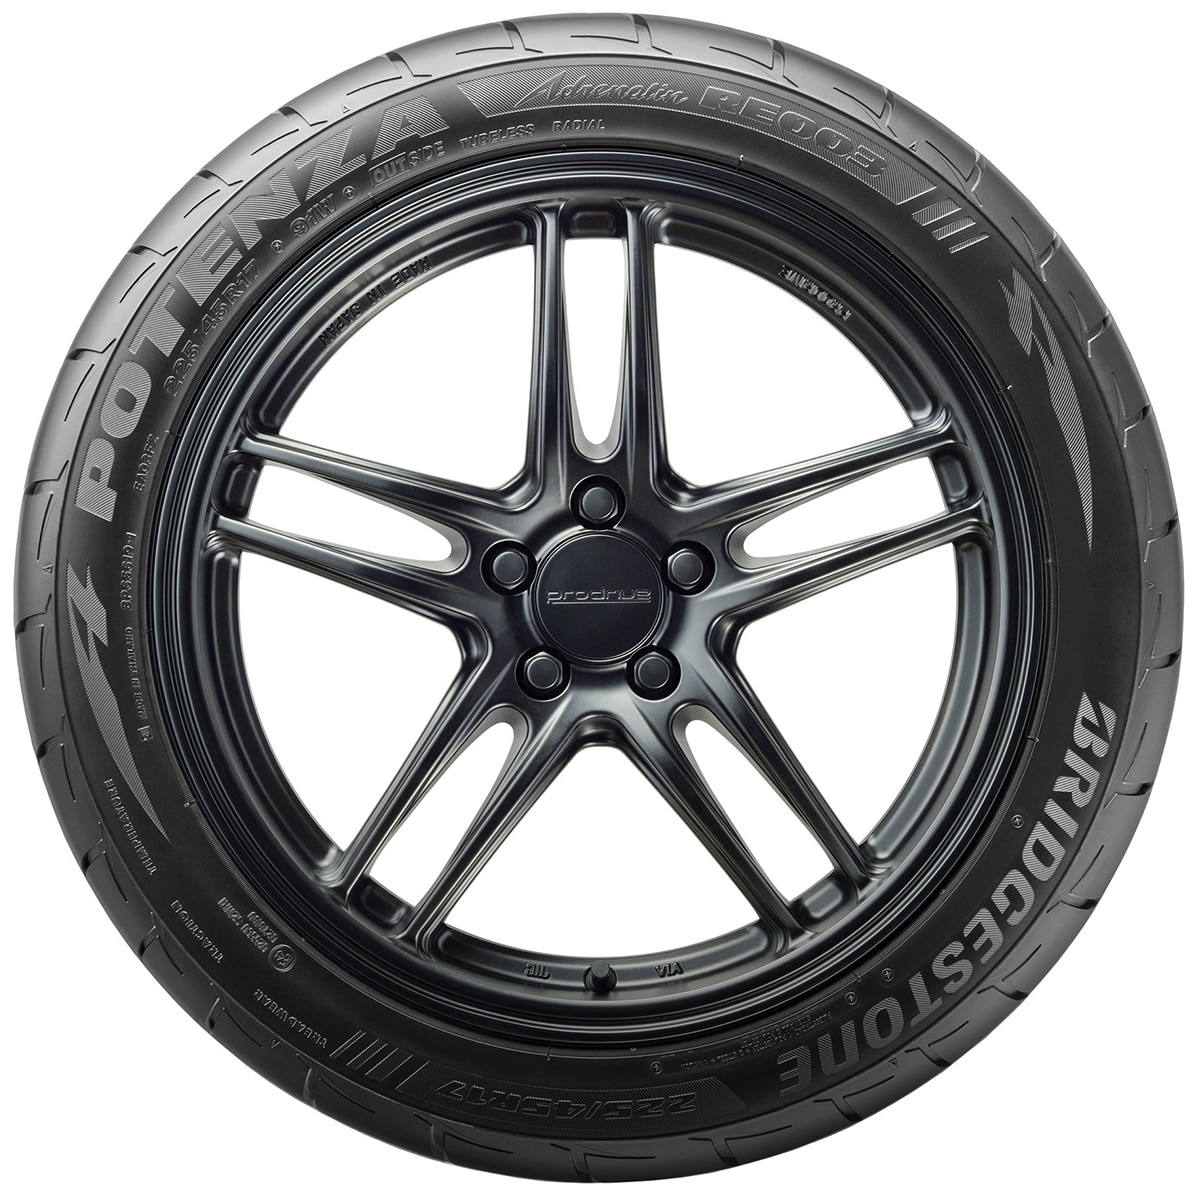 195/55R15 85W BS RE003 - Tyre